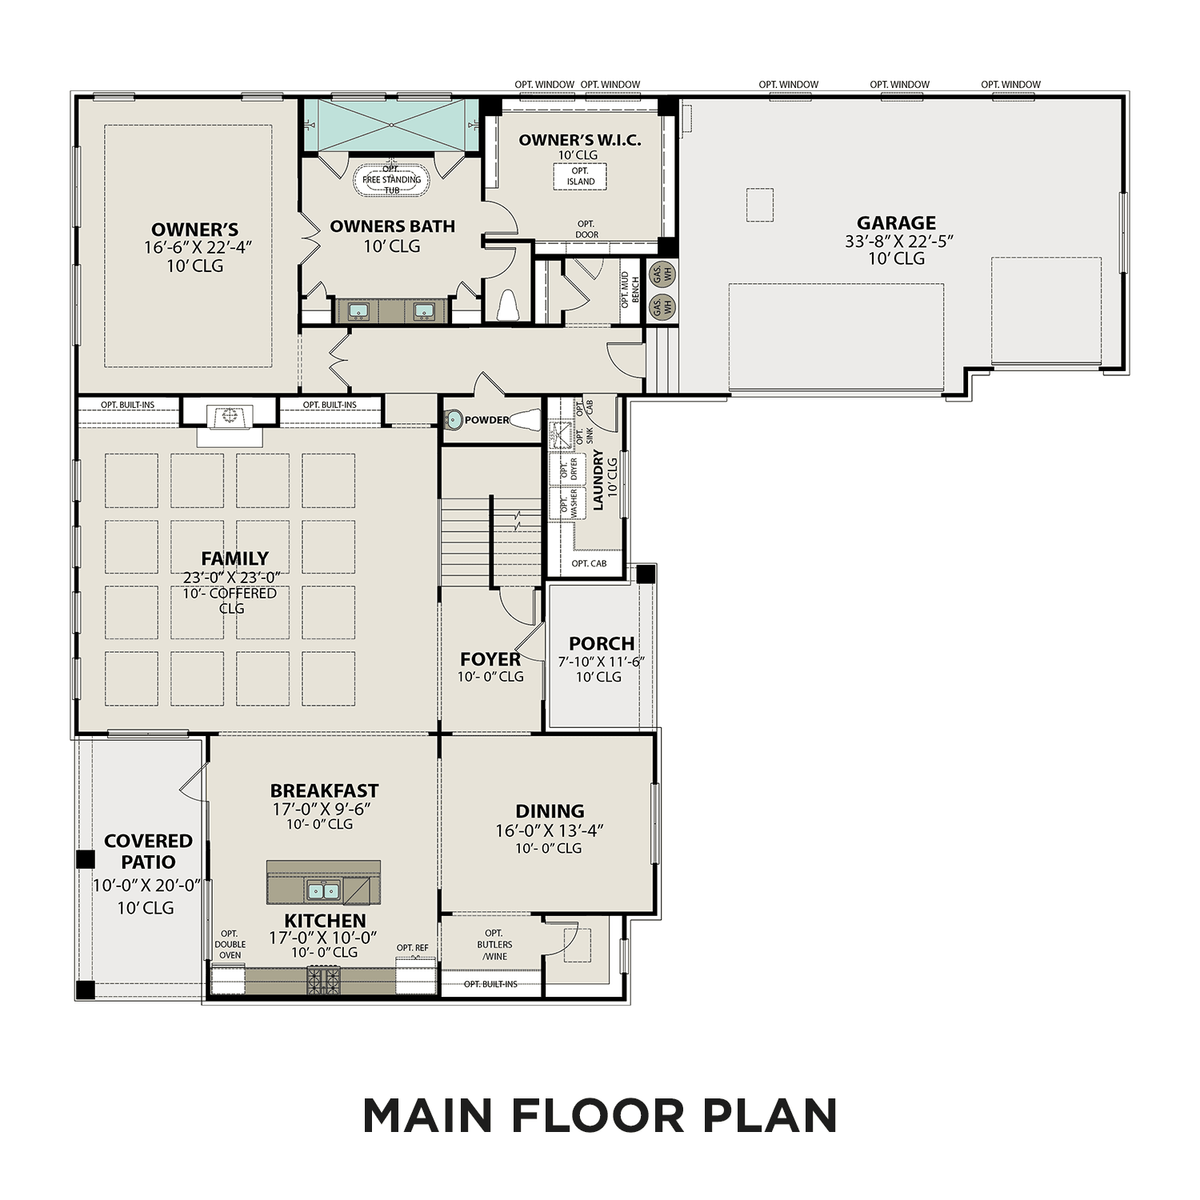 1 - The Bledsoe A floor plan layout for 5721 Eaglemont Dr in Davidson Homes' Shelton Square community.